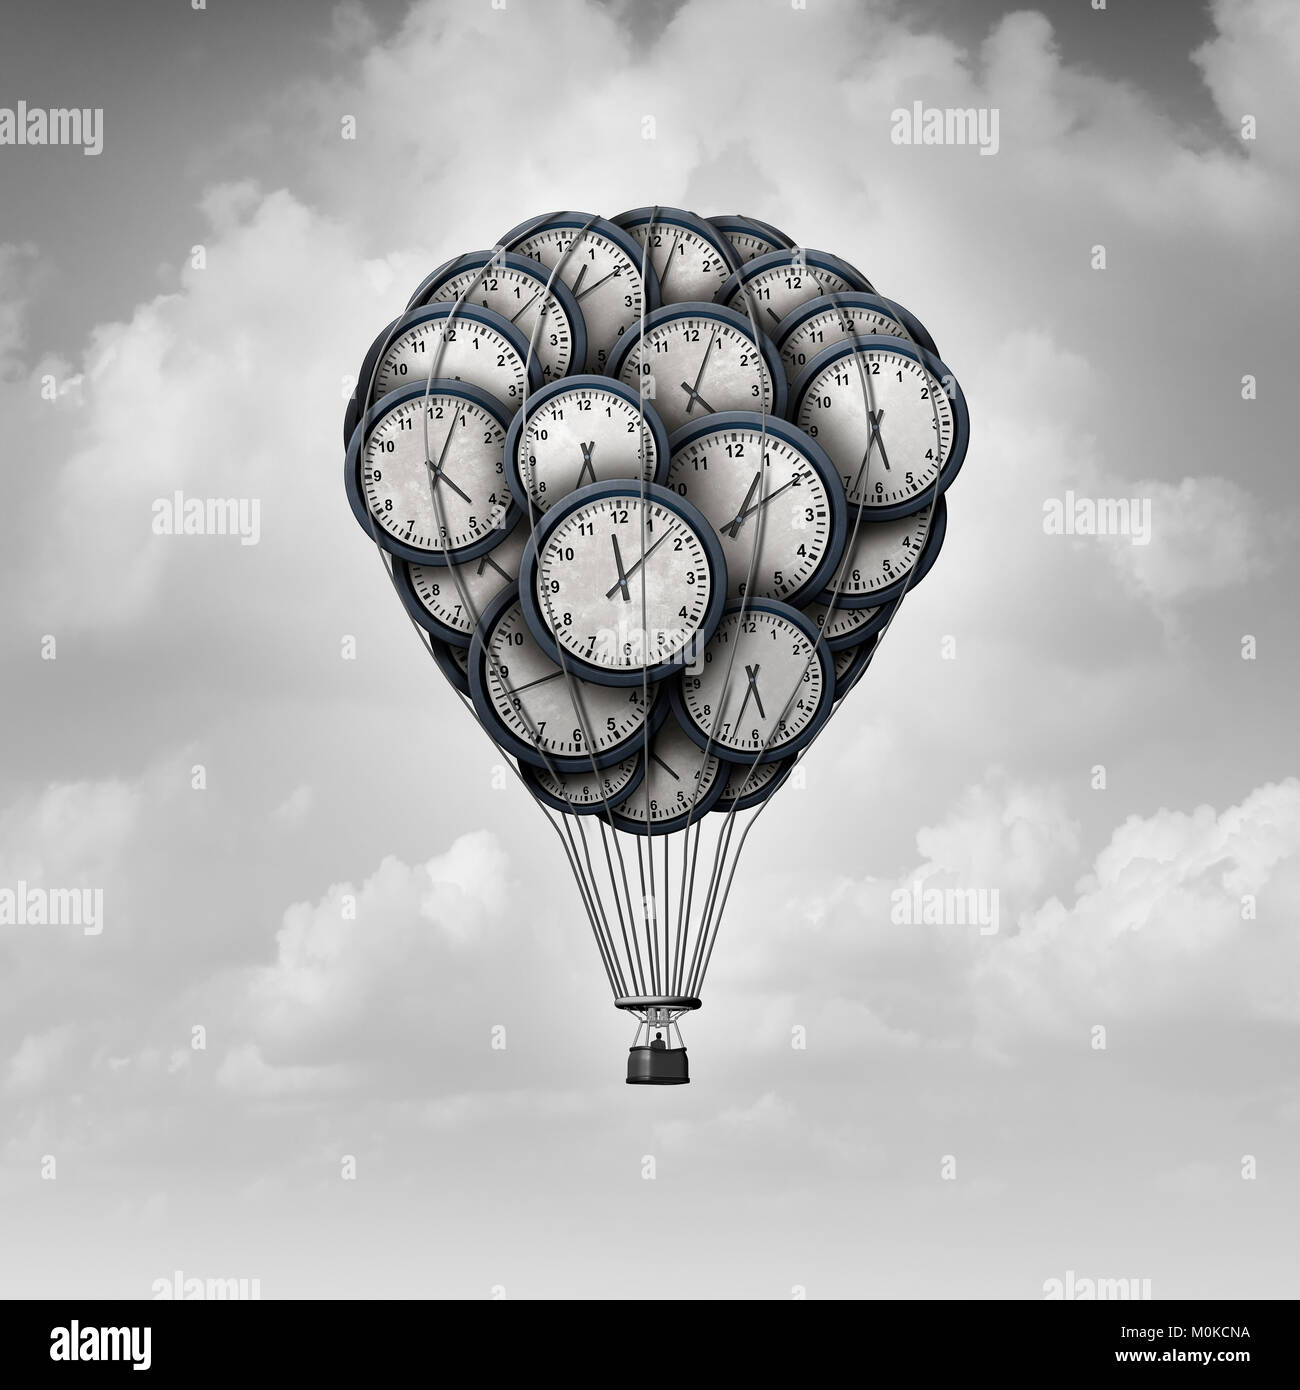 Zeitreise Konzept und Alter exploration Idee, als eine Gruppe von Uhren als ein Heißluftballon mit 3D-Illustration Elemente geprägt. Stockfoto